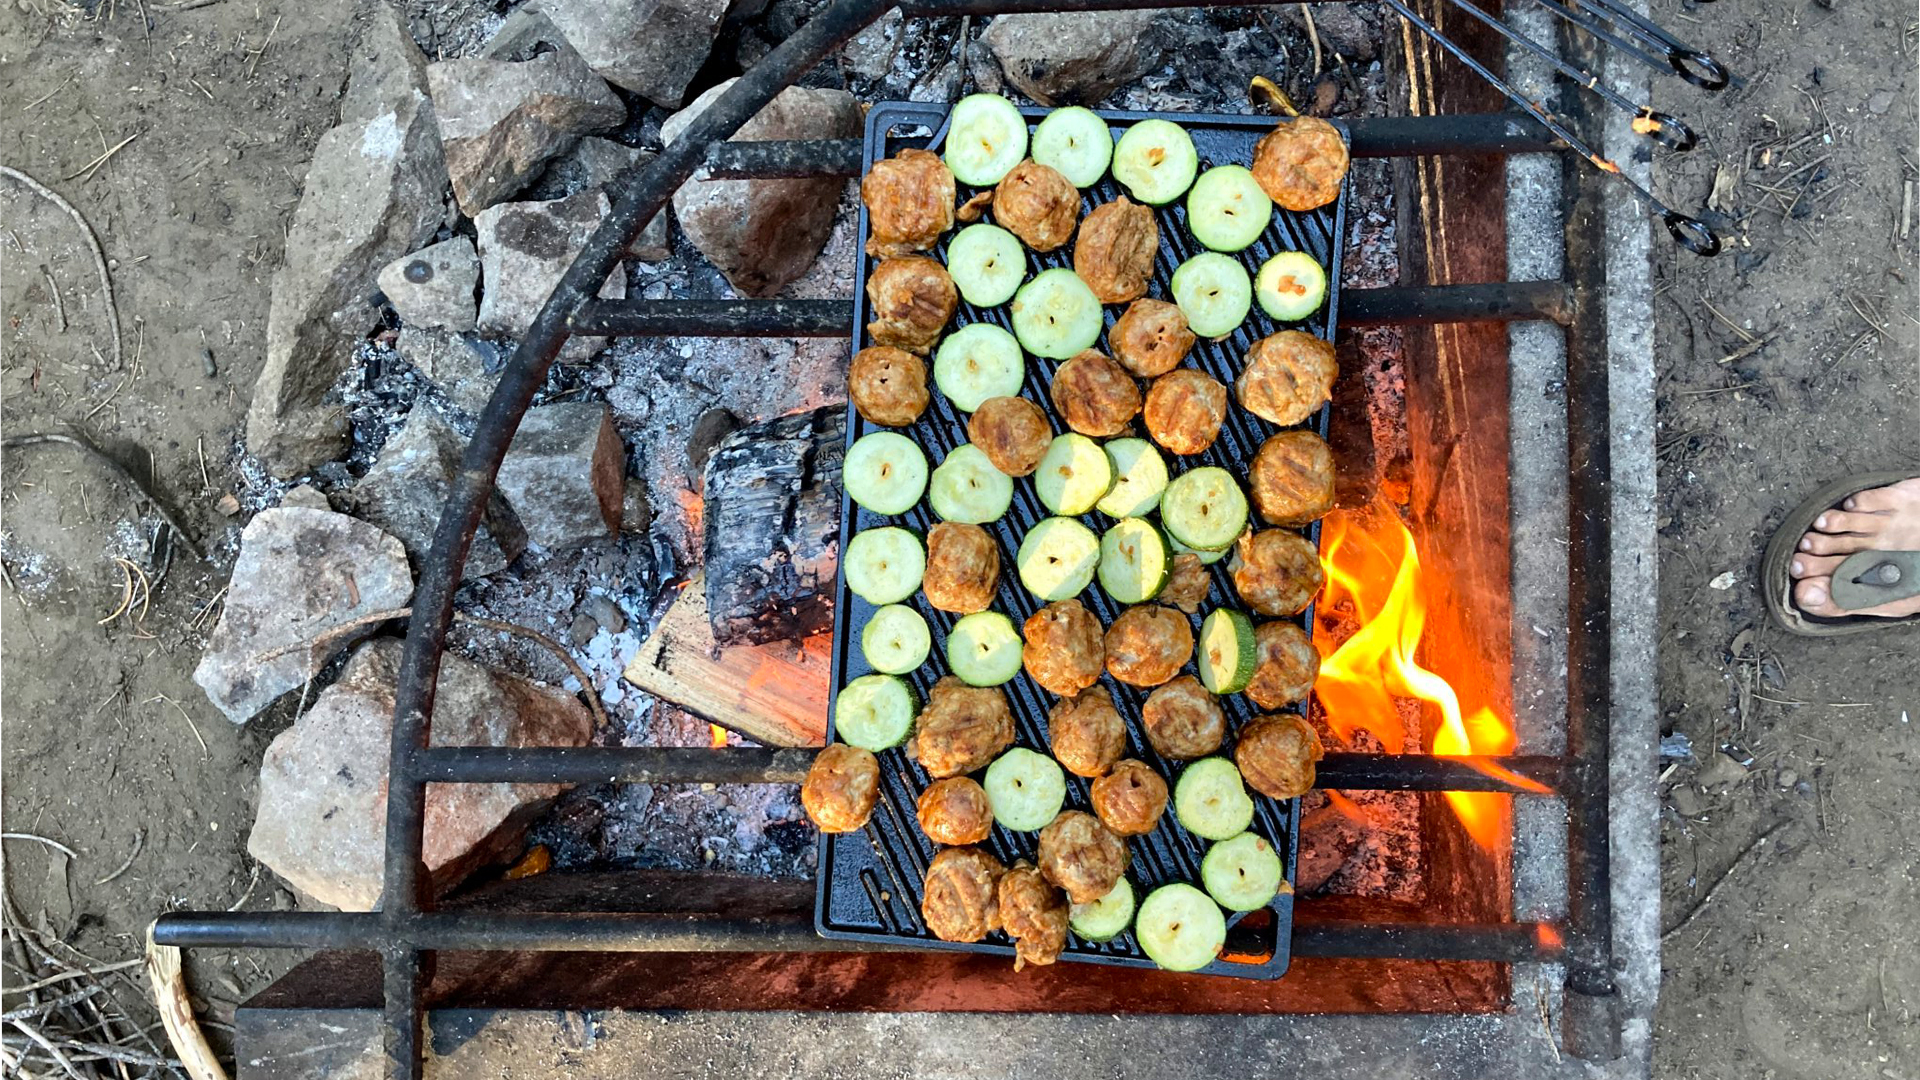 在火上烤架上烤的蔬菜。